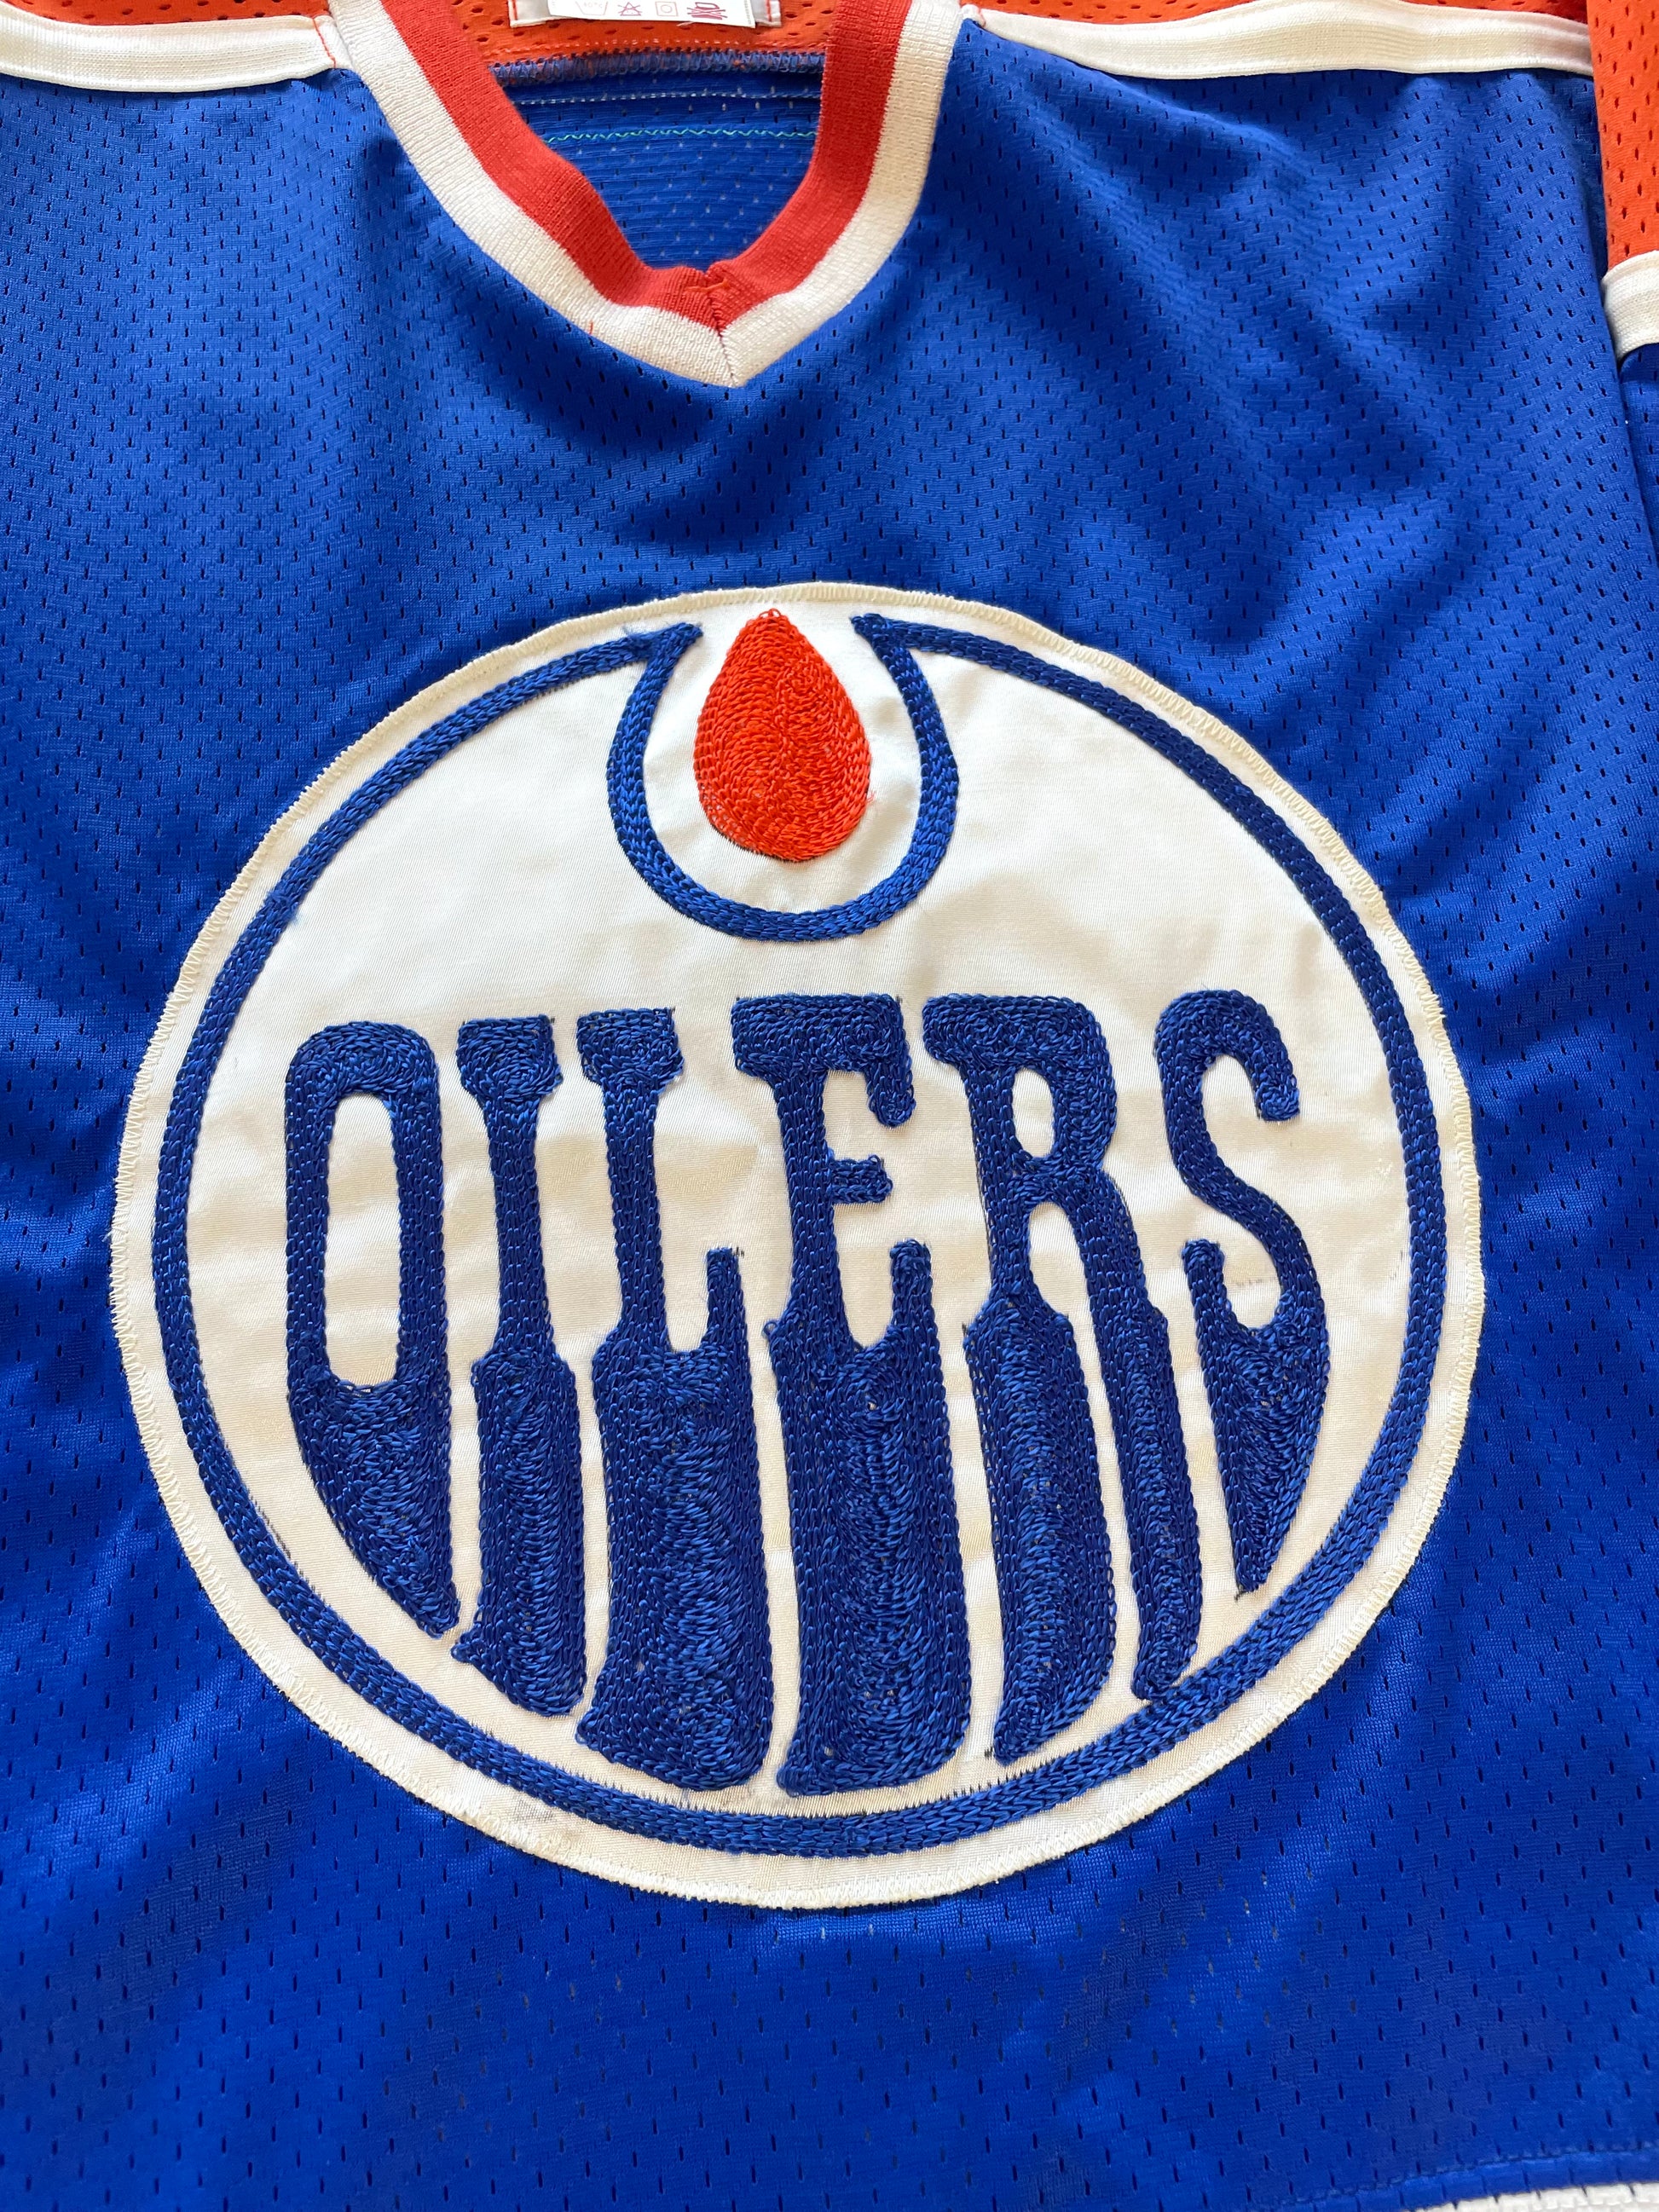 Edmonton Oilers Vintage Starter Fan Jersey L 